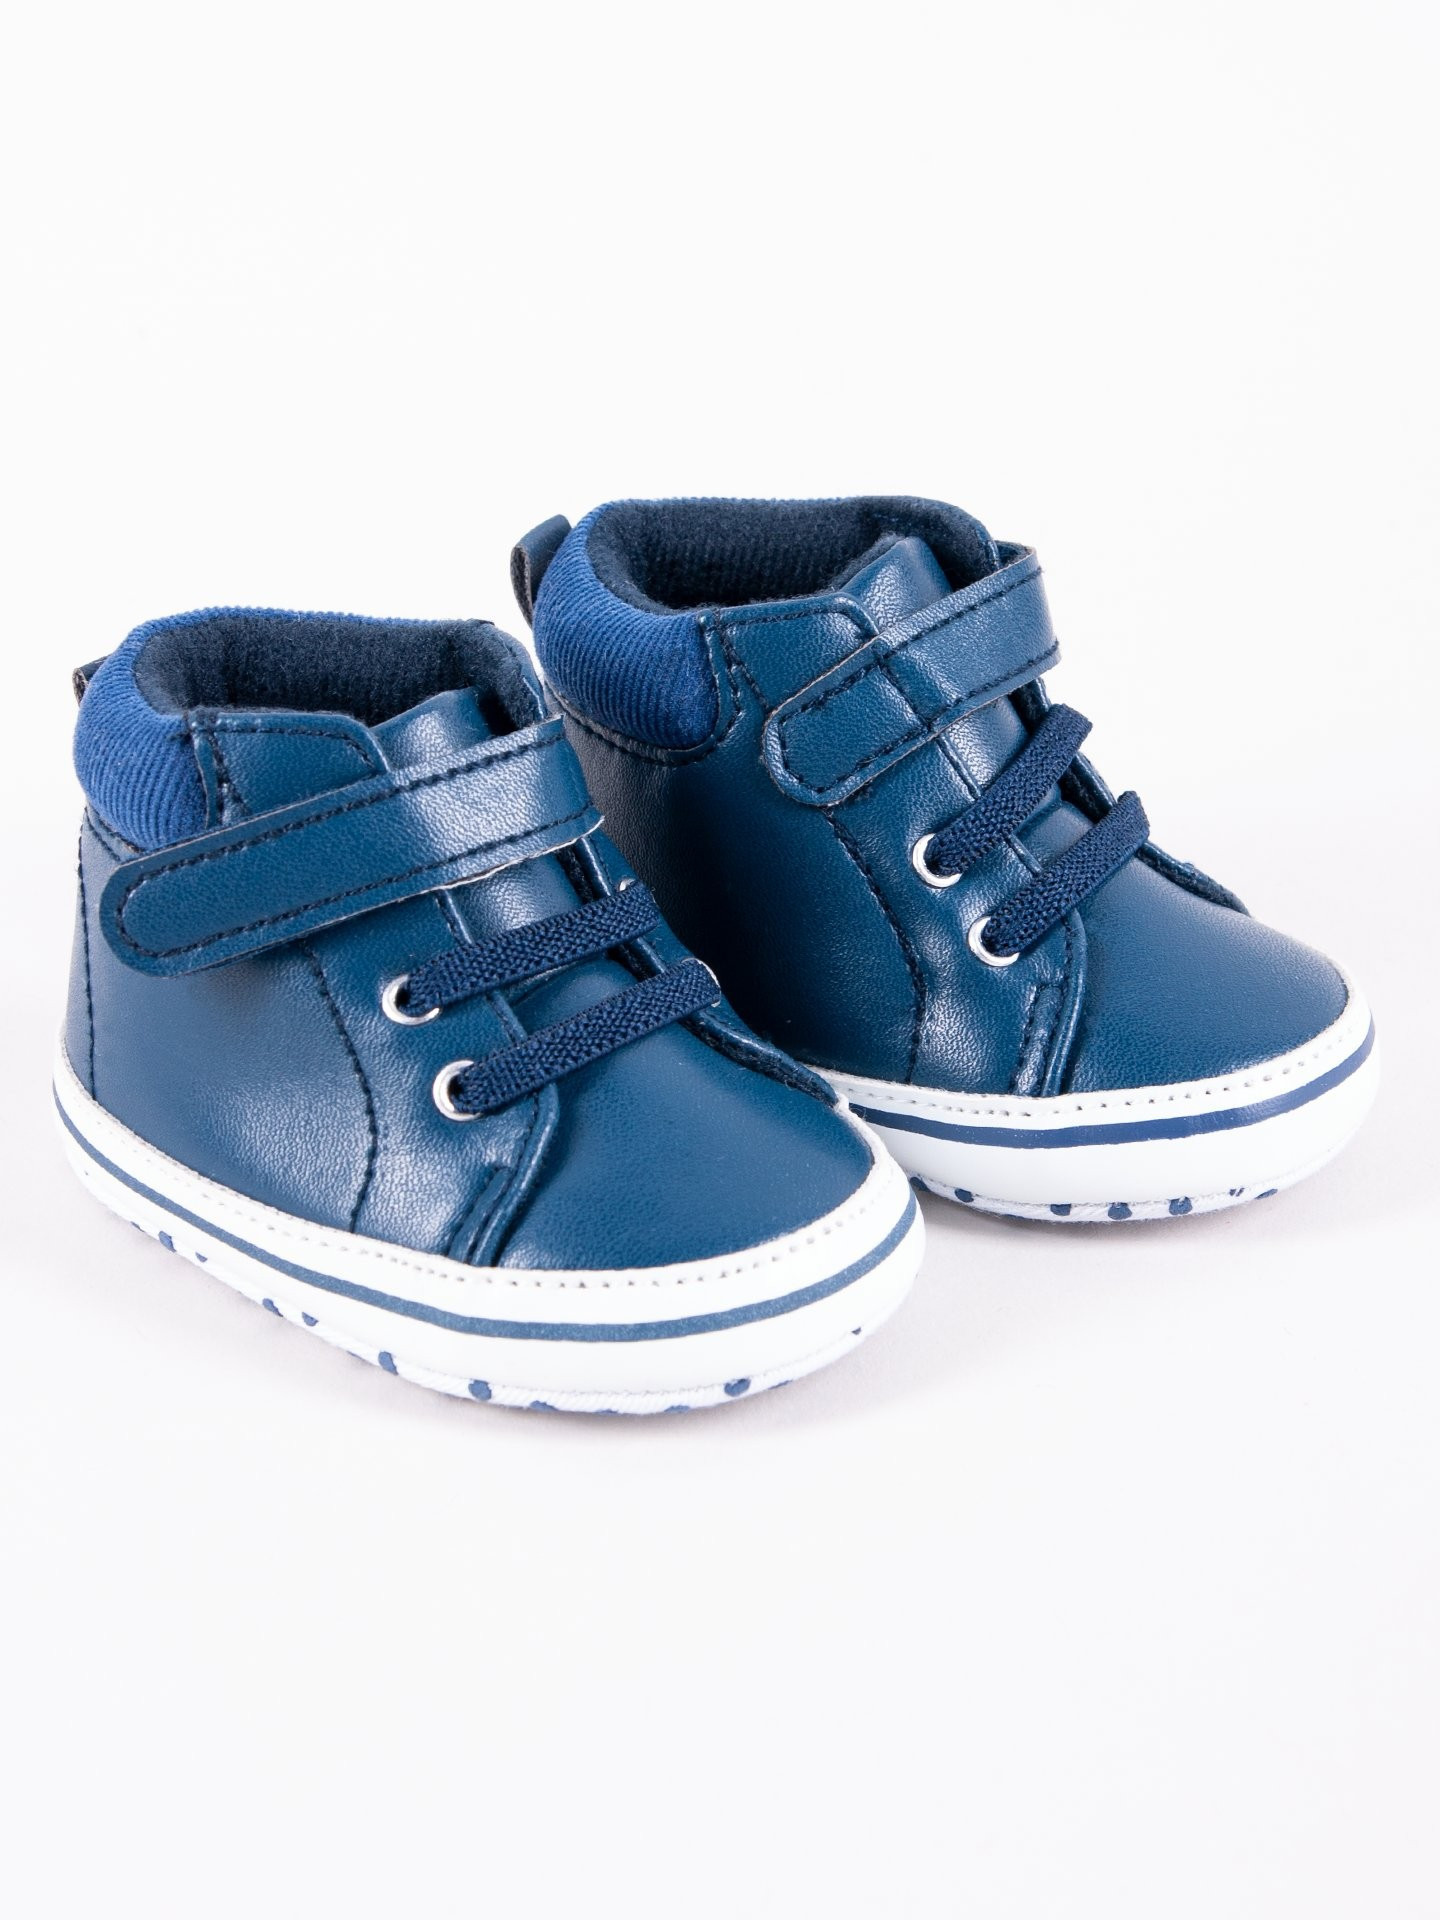 Yoclub Dětské chlapecké boty OBO-0198C-1900 Navy Blue 0-6 měsíců